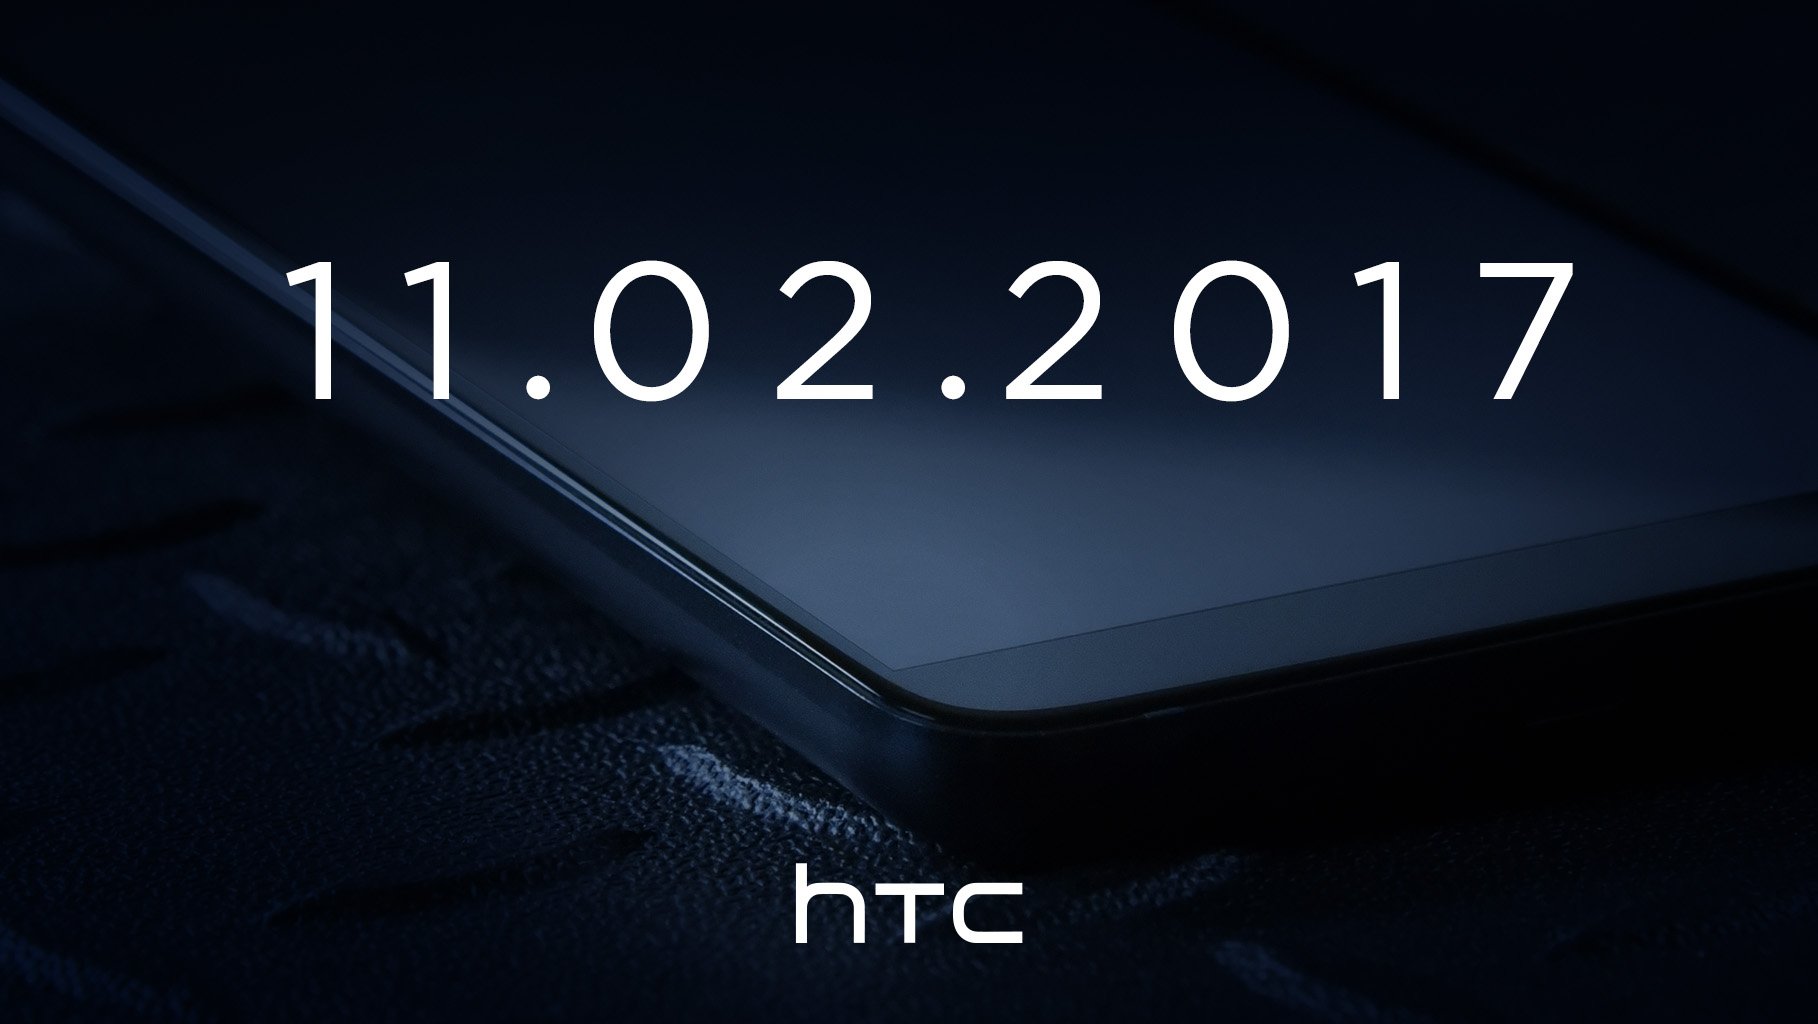 HTC hé lộ hình ảnh của HTC U11+ với thiết kế màn hình không viền ấn tượng